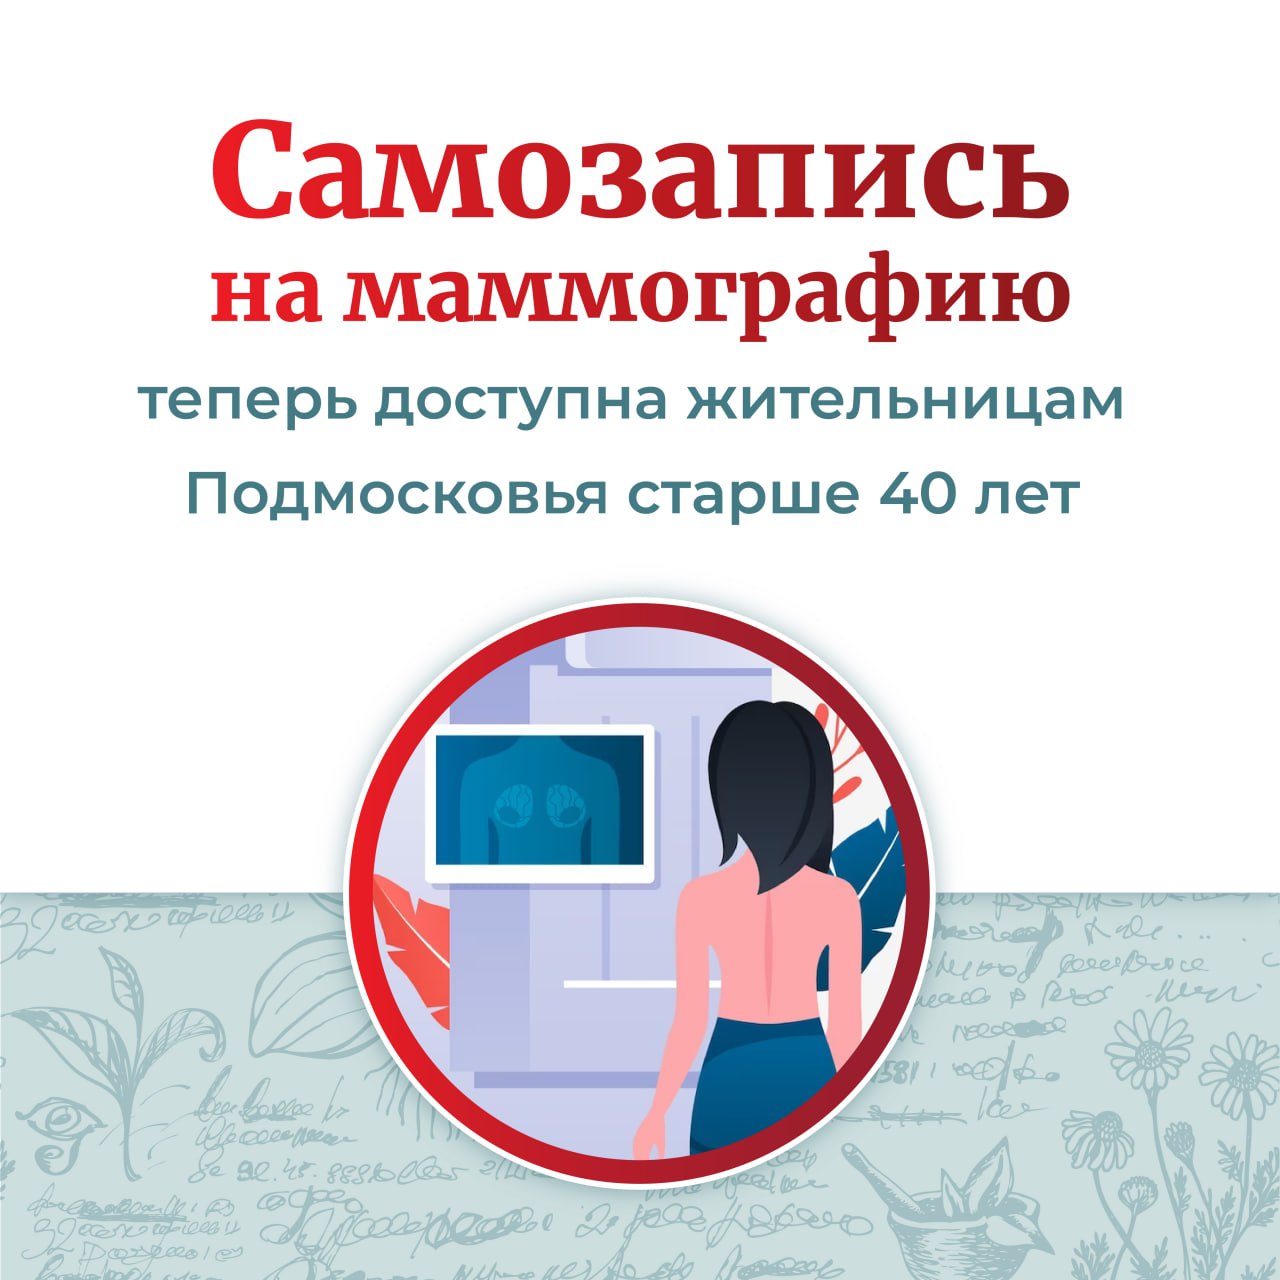 Самозапись на маммографию позволила обнаружить 80 случаев рака груди в Московской области